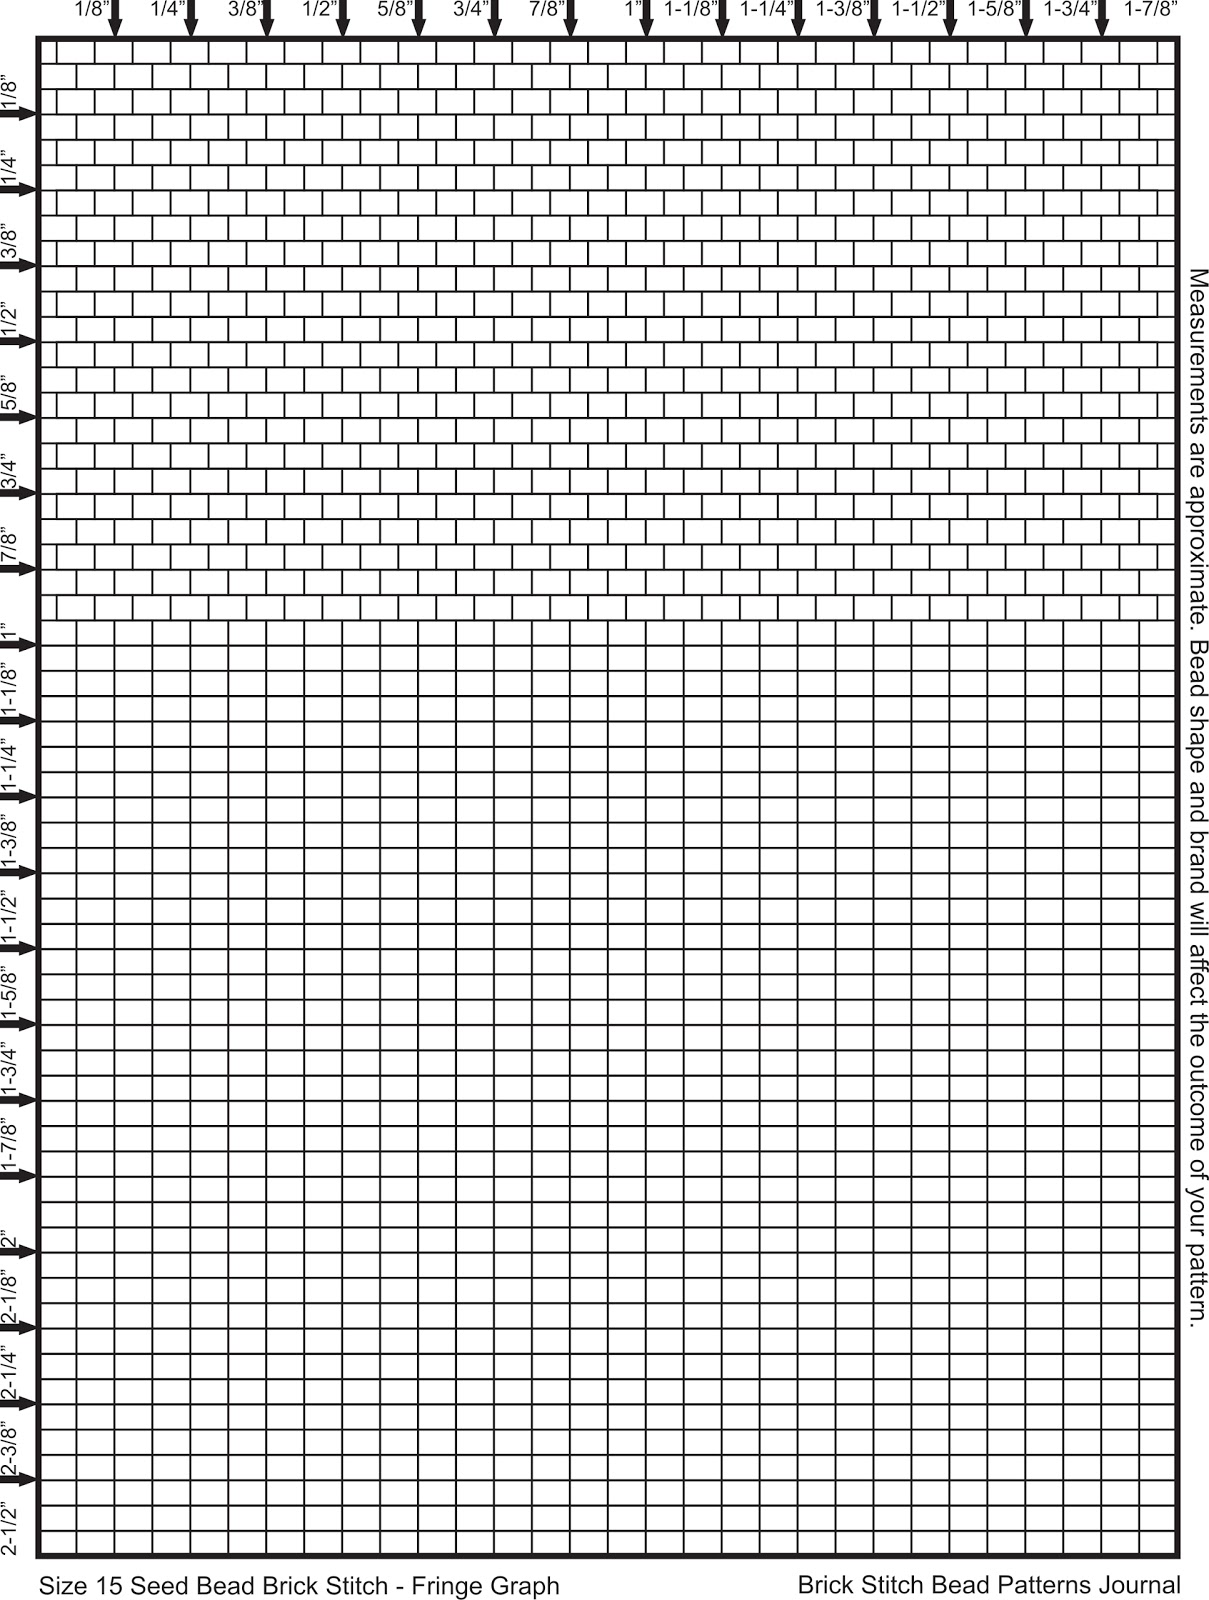 brick-stitch-bead-patterns-journal-size-15-seed-bead-graph-paper-brick